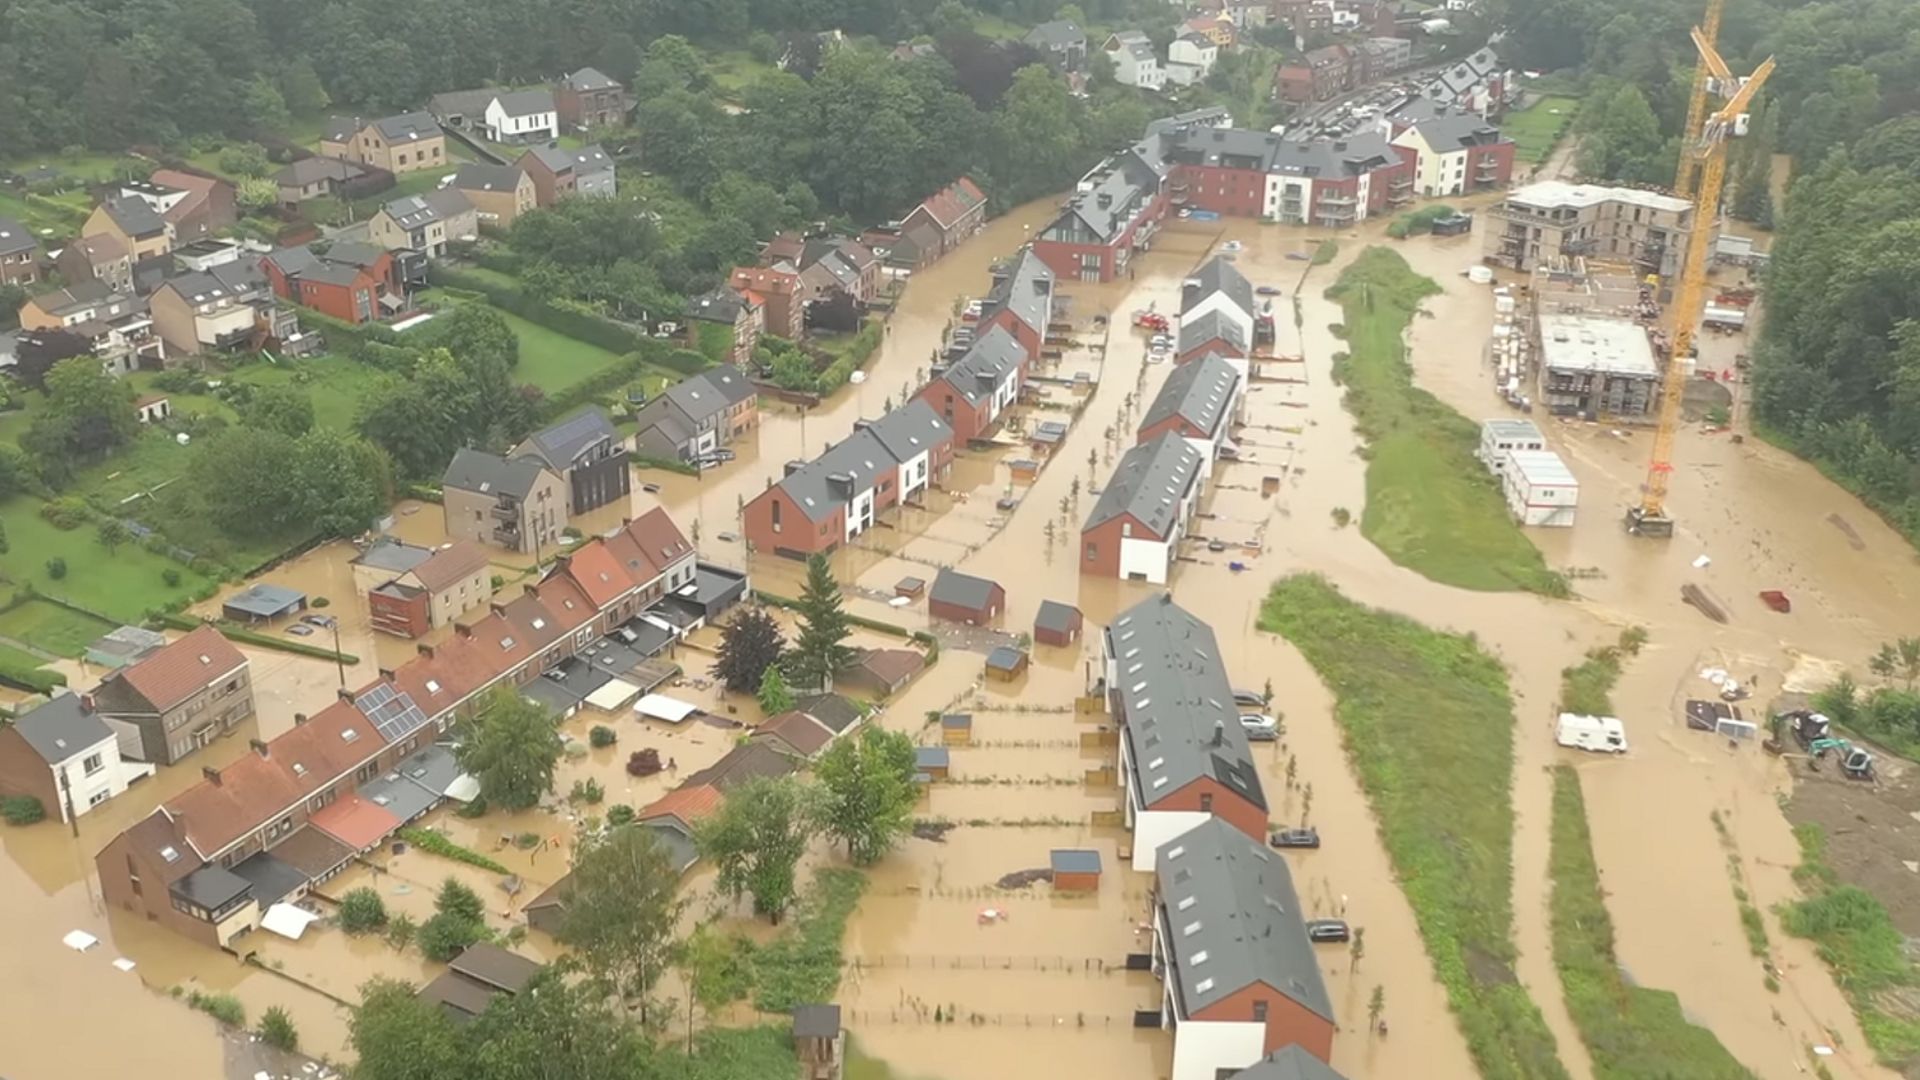 inondations-a-mont-saint-guibert-creer-des-zones-tampons-en-amont-pour-reguler-deventuels-futurs-debordements-de-lorne